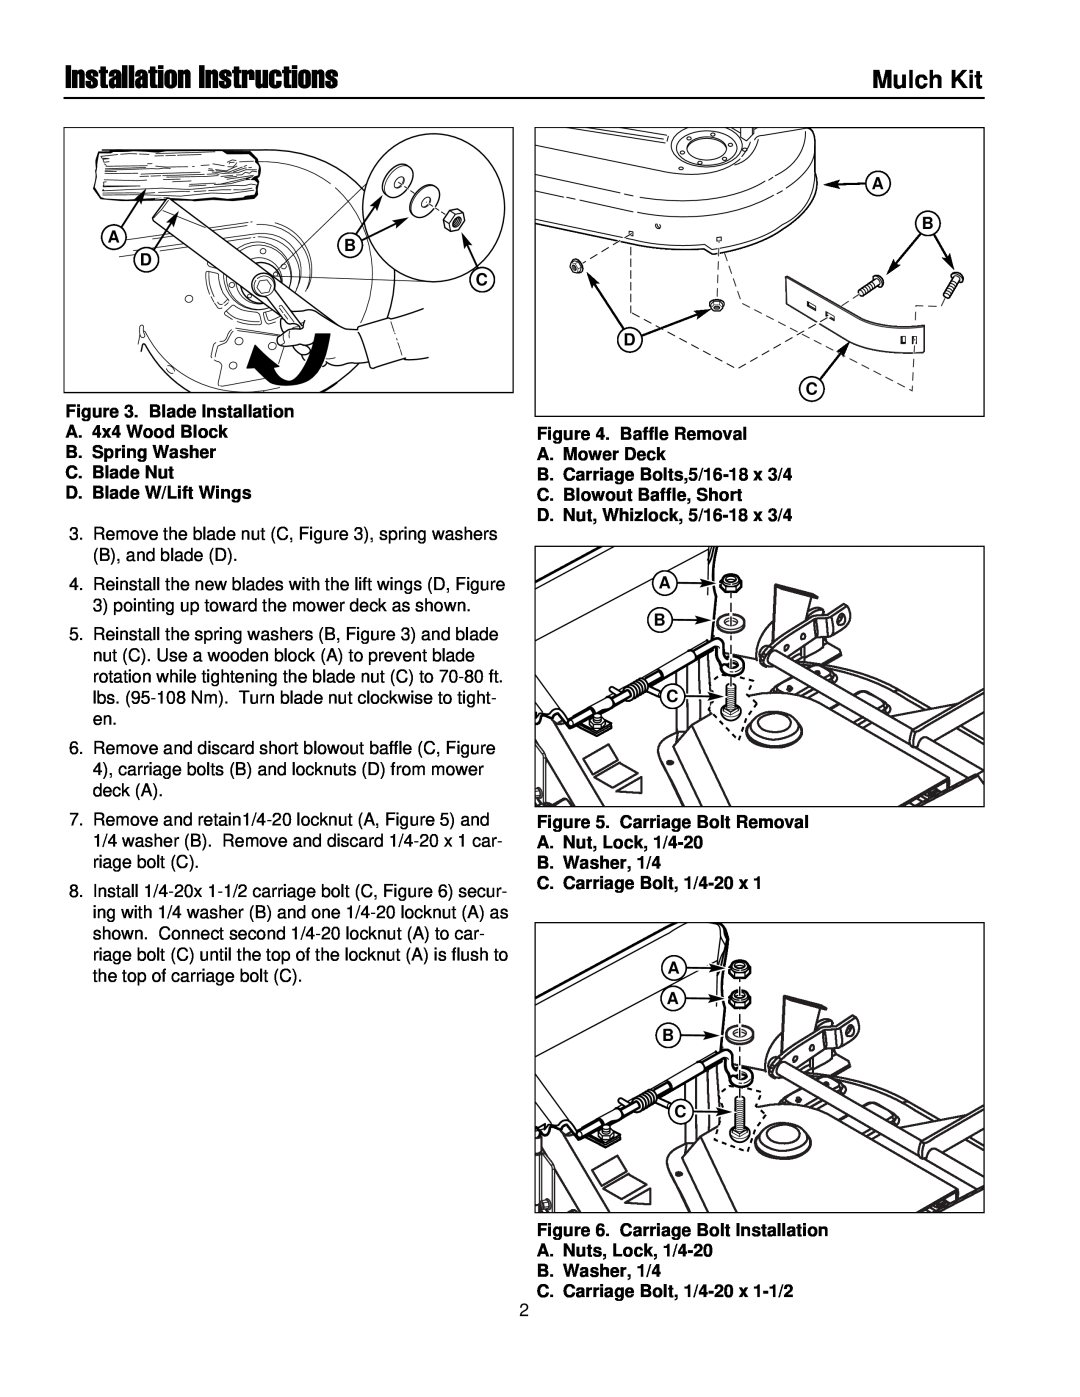 Simplicity 250Z installation instructions Installation Instructions, Mulch Kit 